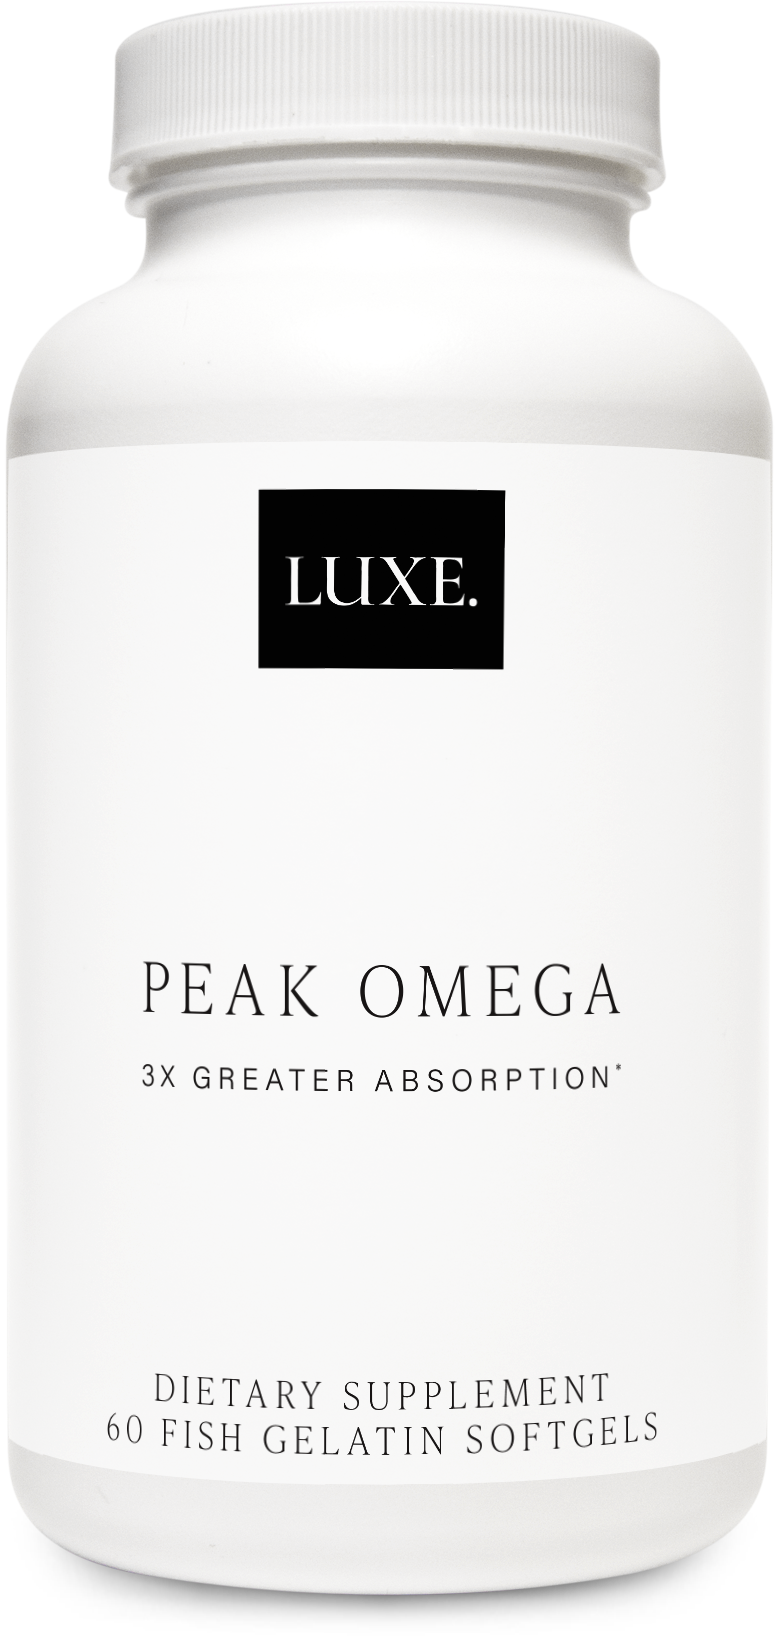 LUXE., Peak Omega